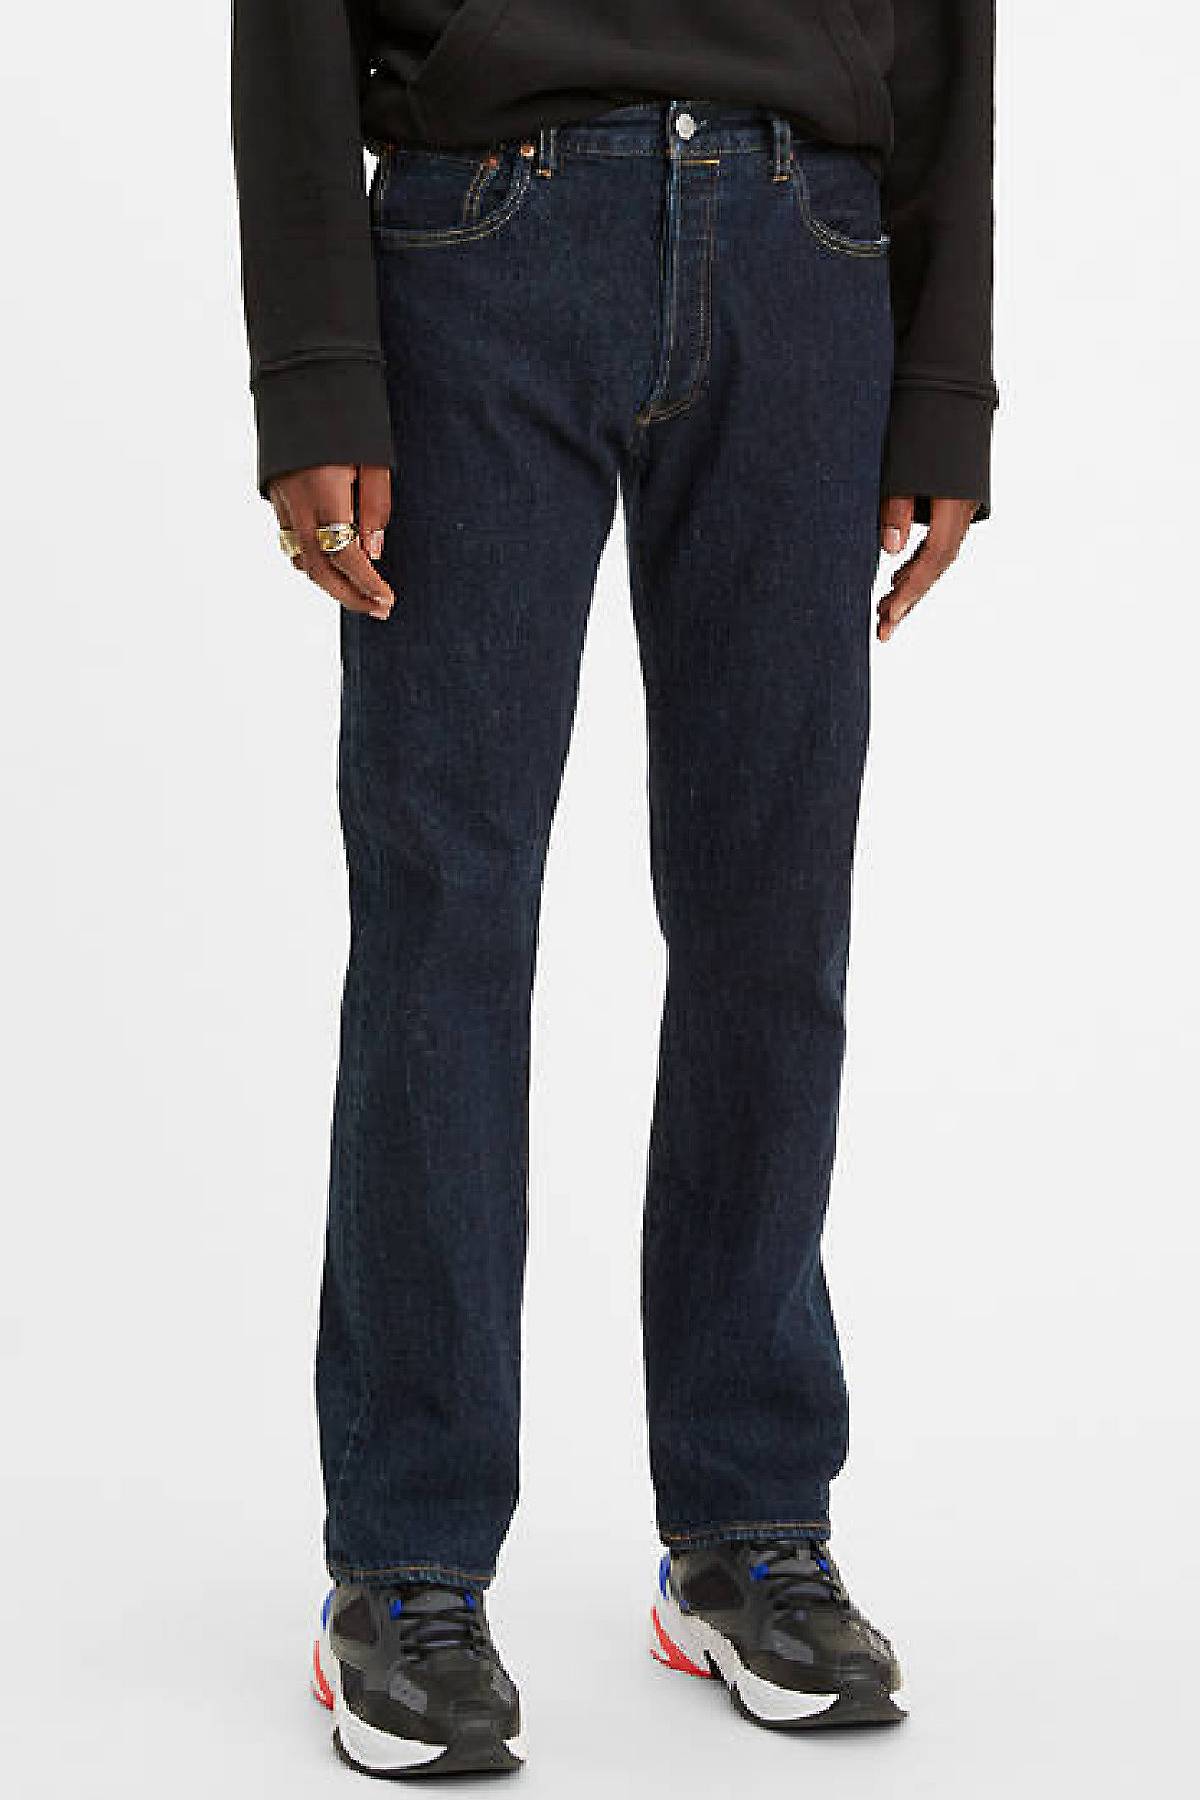 Model wearing 501® '93 Straight jeans